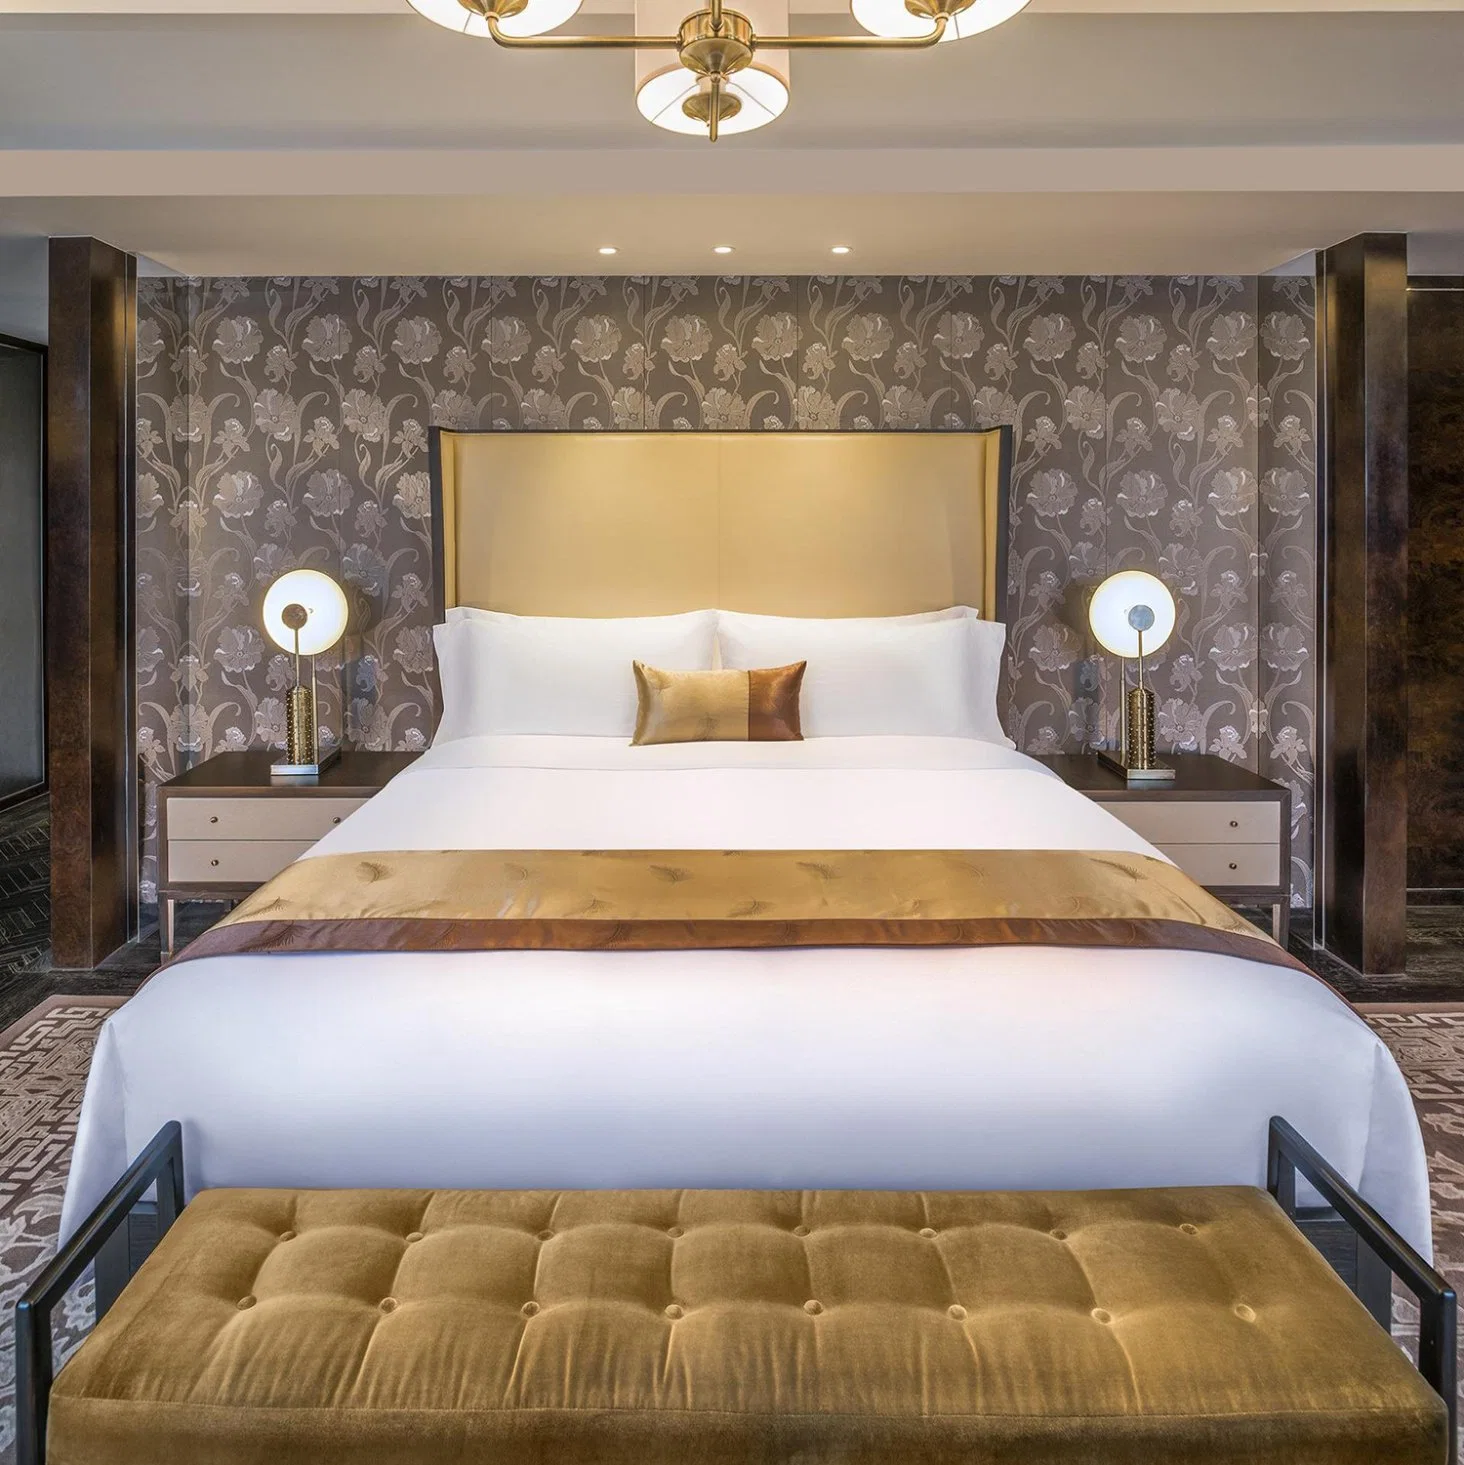 5 Star Hotel Wooden Bedroom Furniture Set